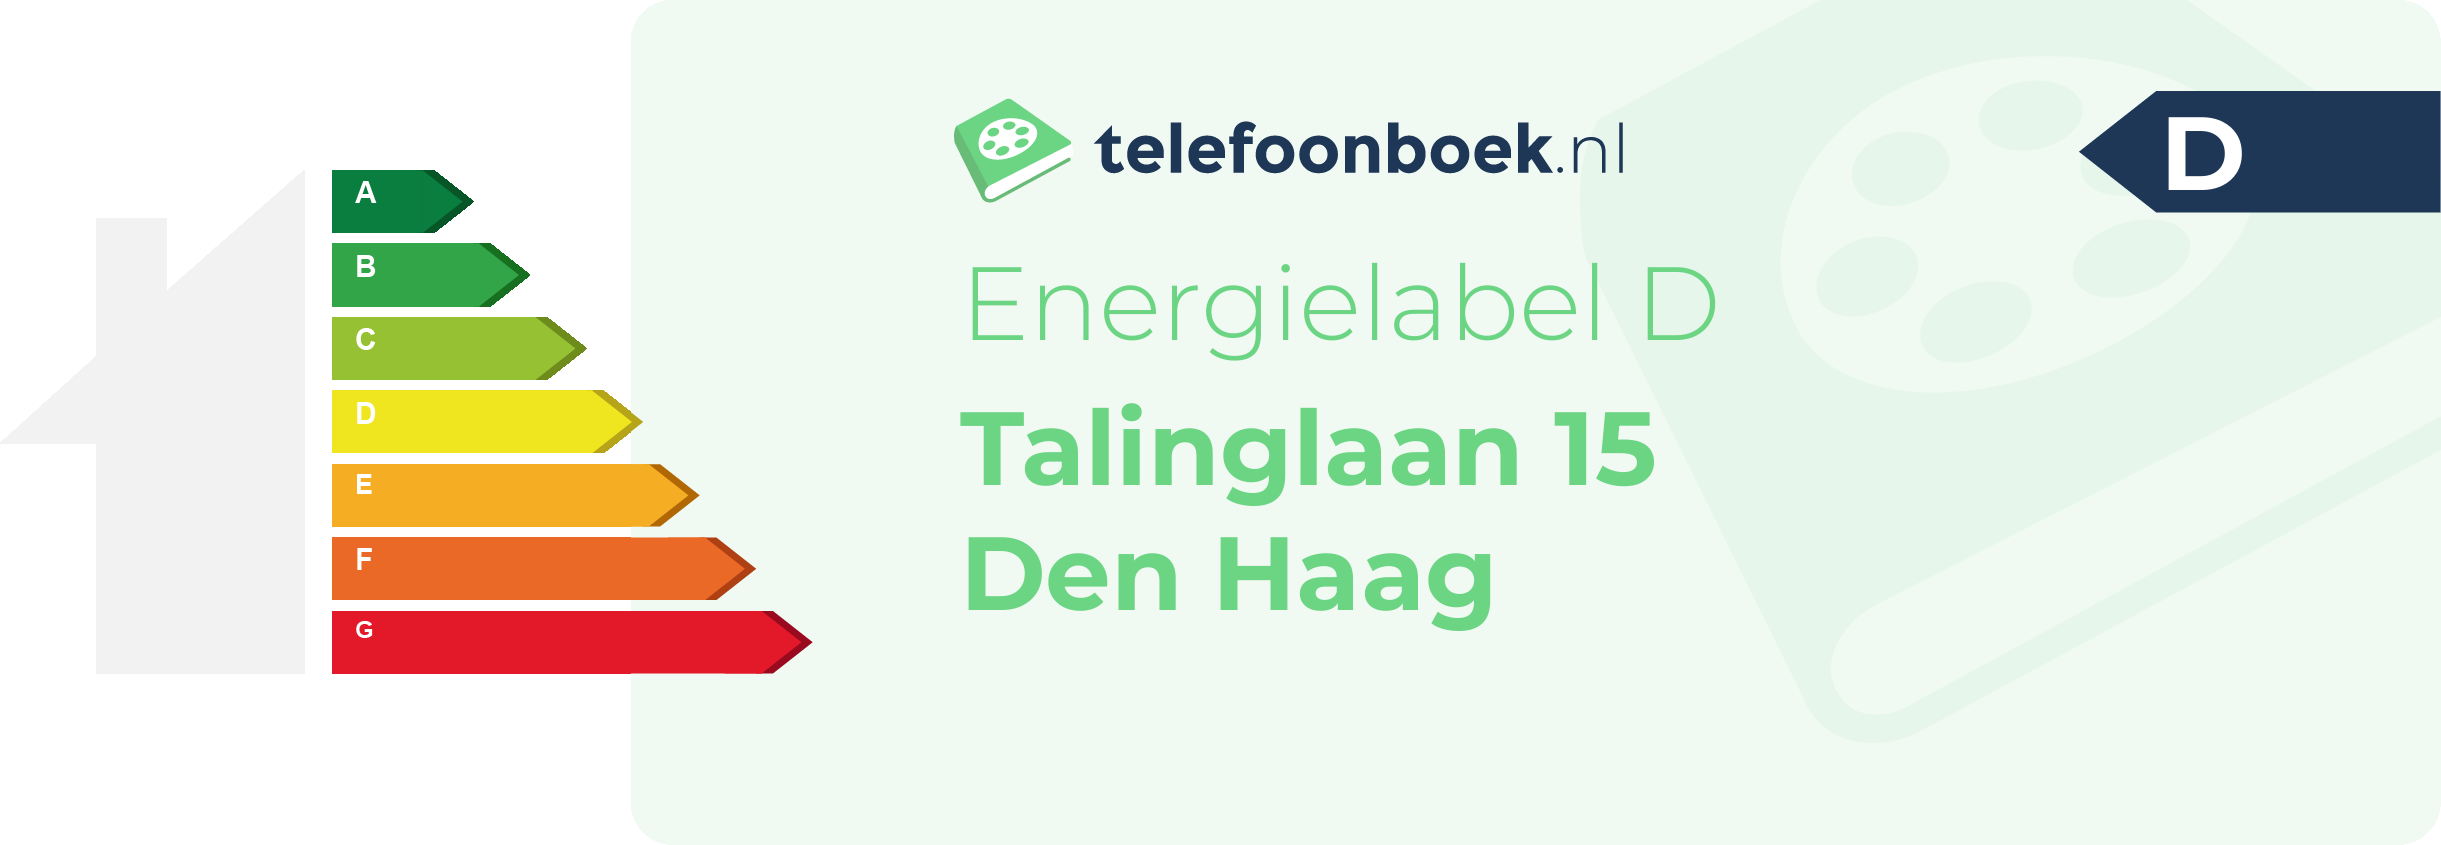 Energielabel Talinglaan 15 Den Haag